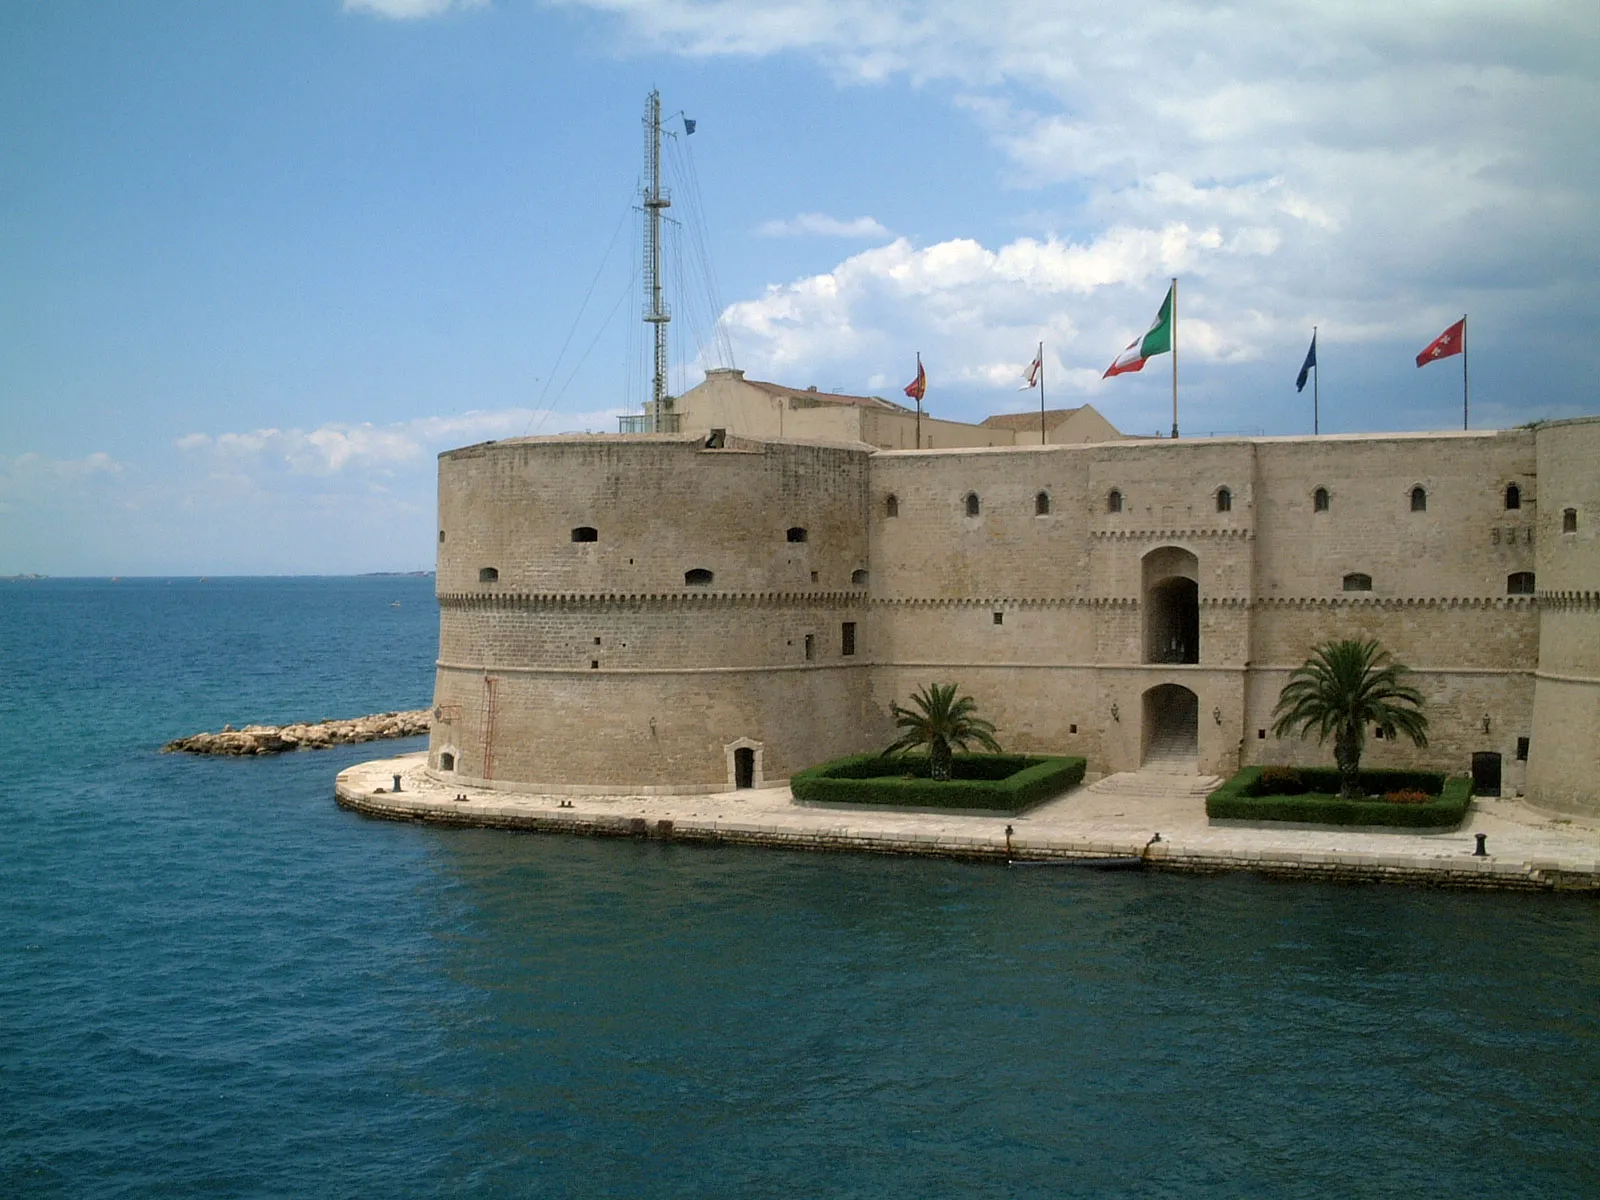 Taranto in Italy